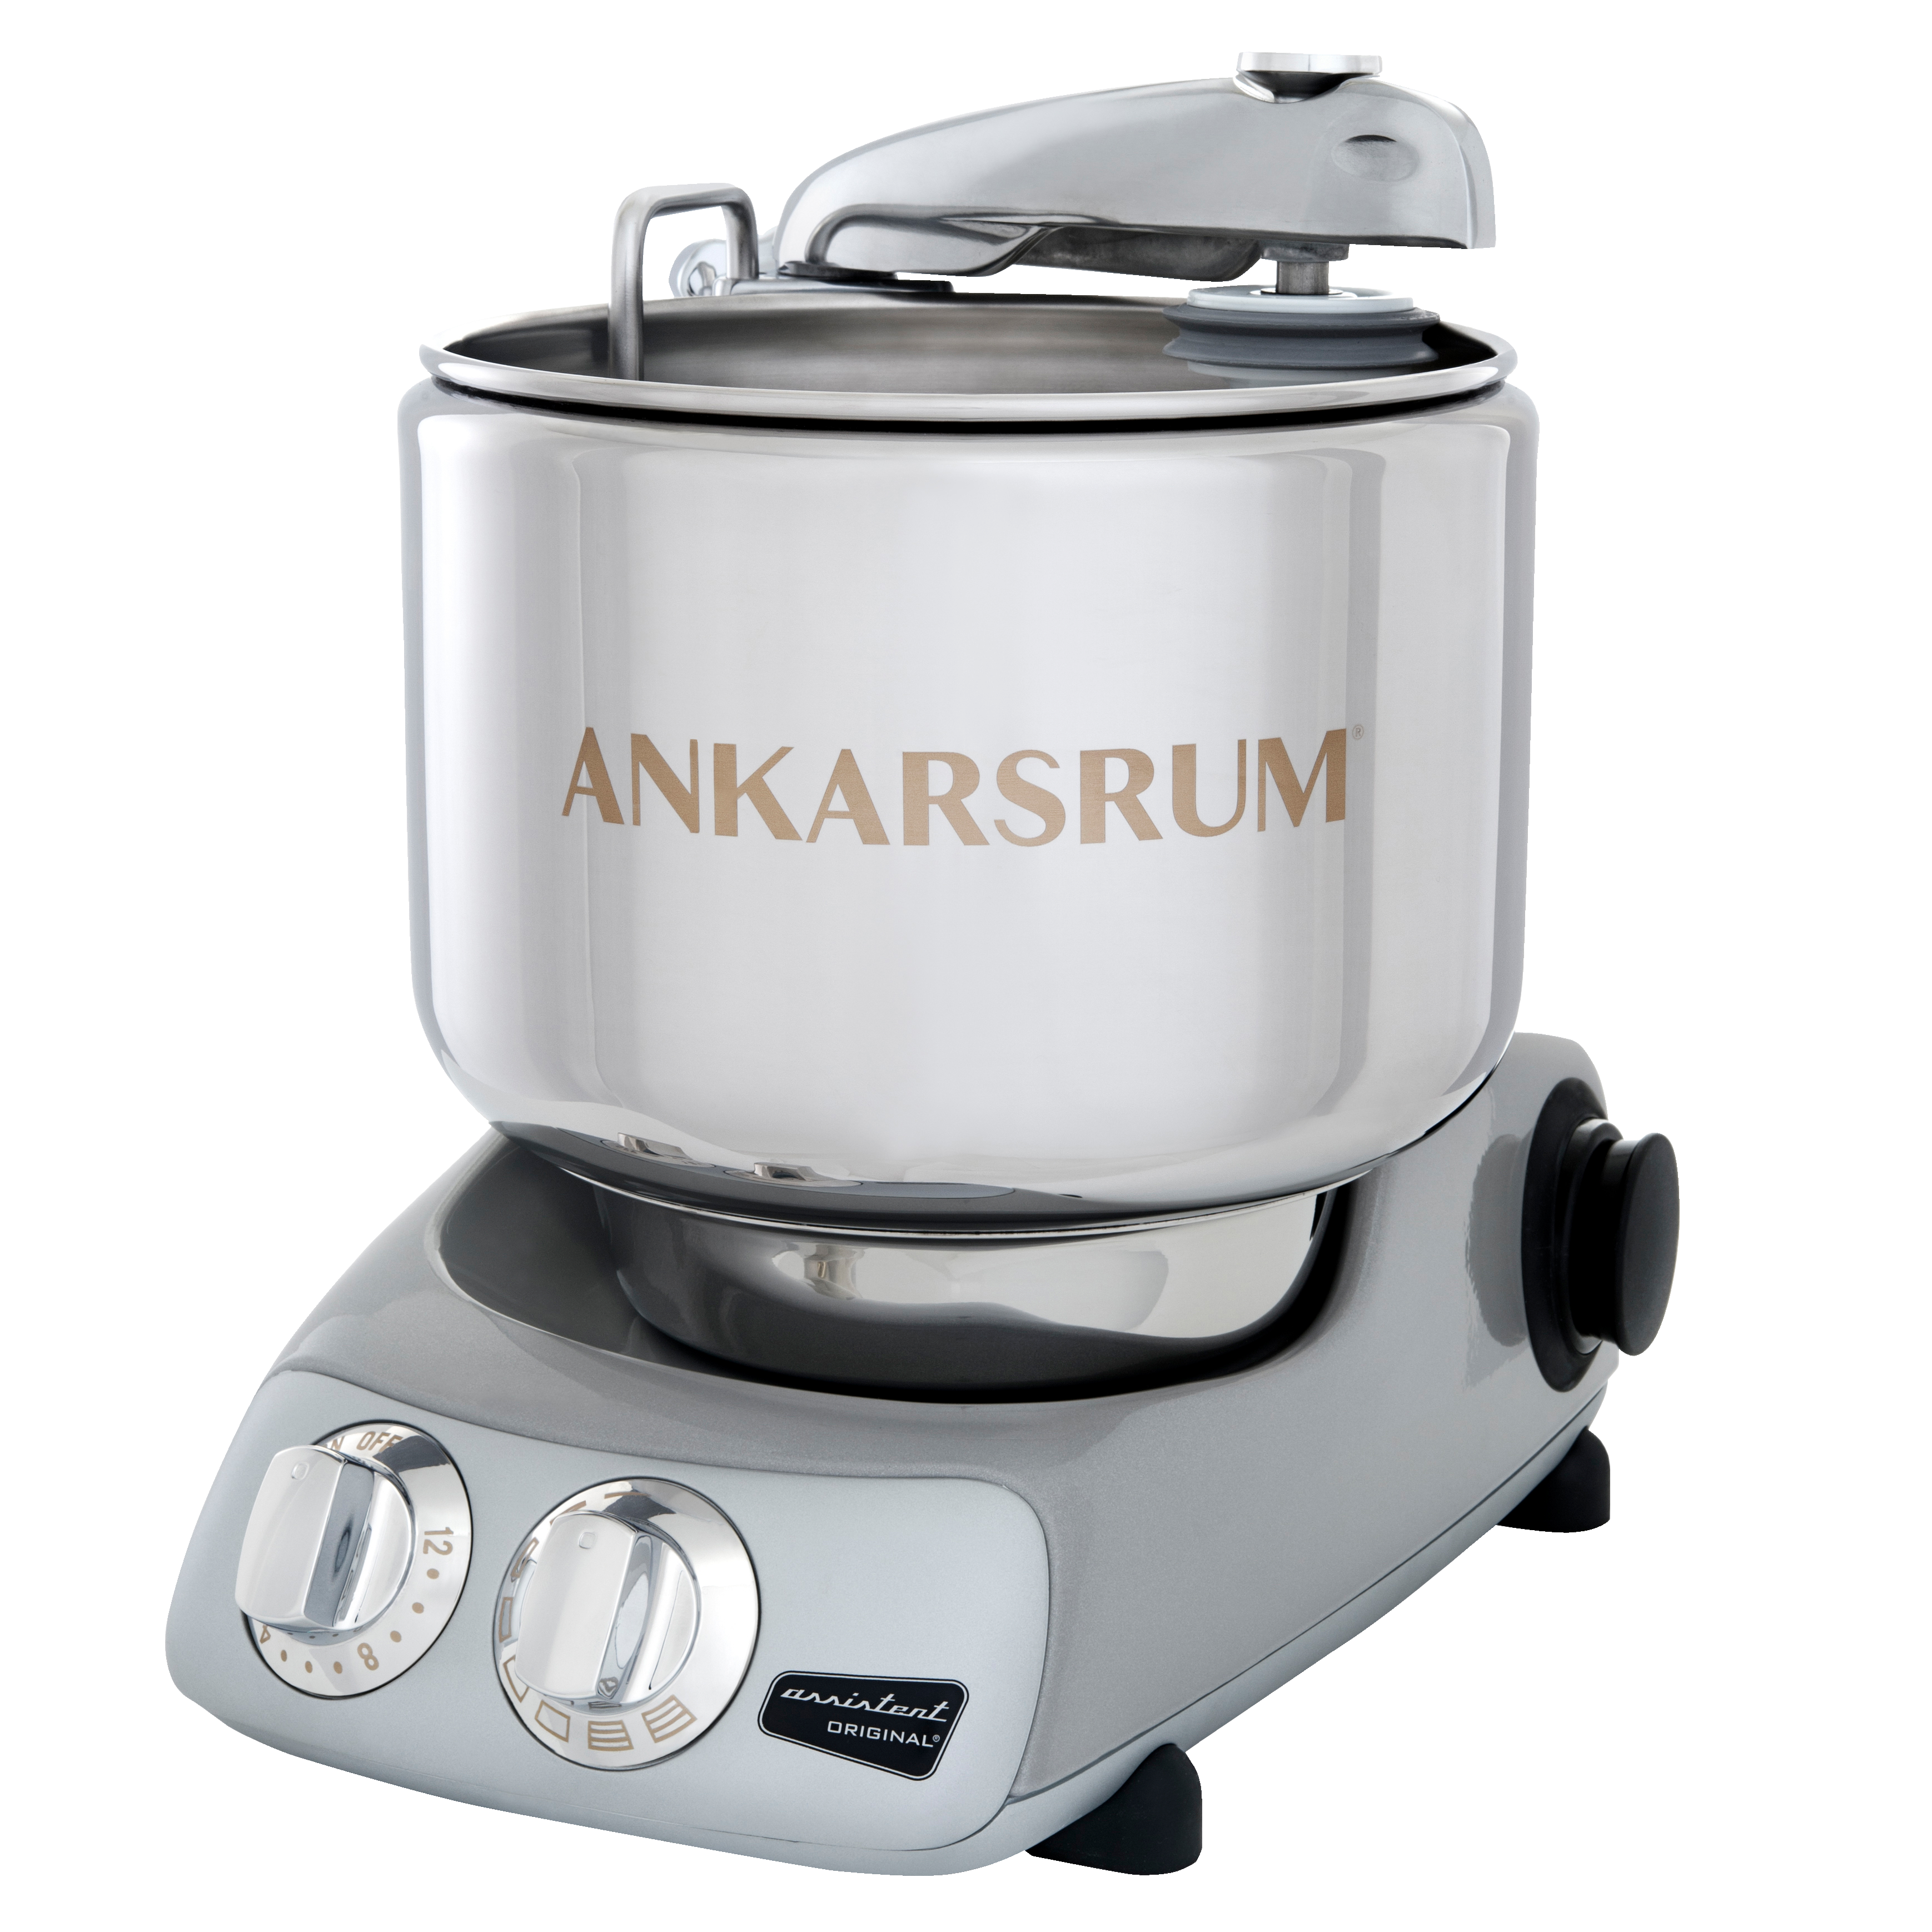 Ankarsrum Jubilee Silver køkkenmaskine AKM6230 (sølv ...